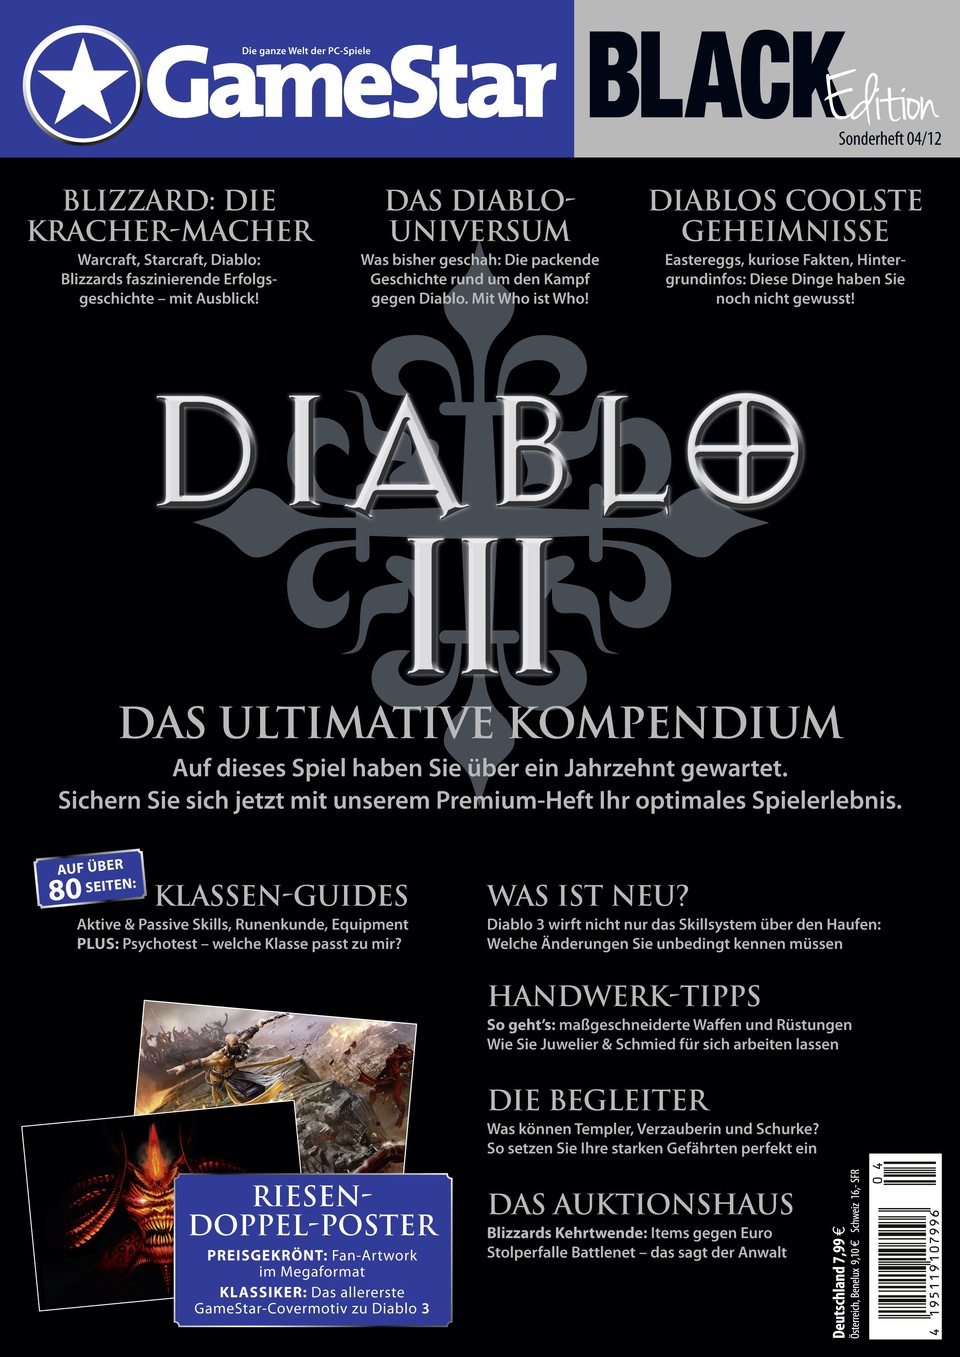 Diablo 3: Das Ultimative Kompendium als Sonderheft in der GameStar Black Edition: Jetzt am Kiosk, als PDF-Download oder Tablet-Version für iPad und Android-Geräte.